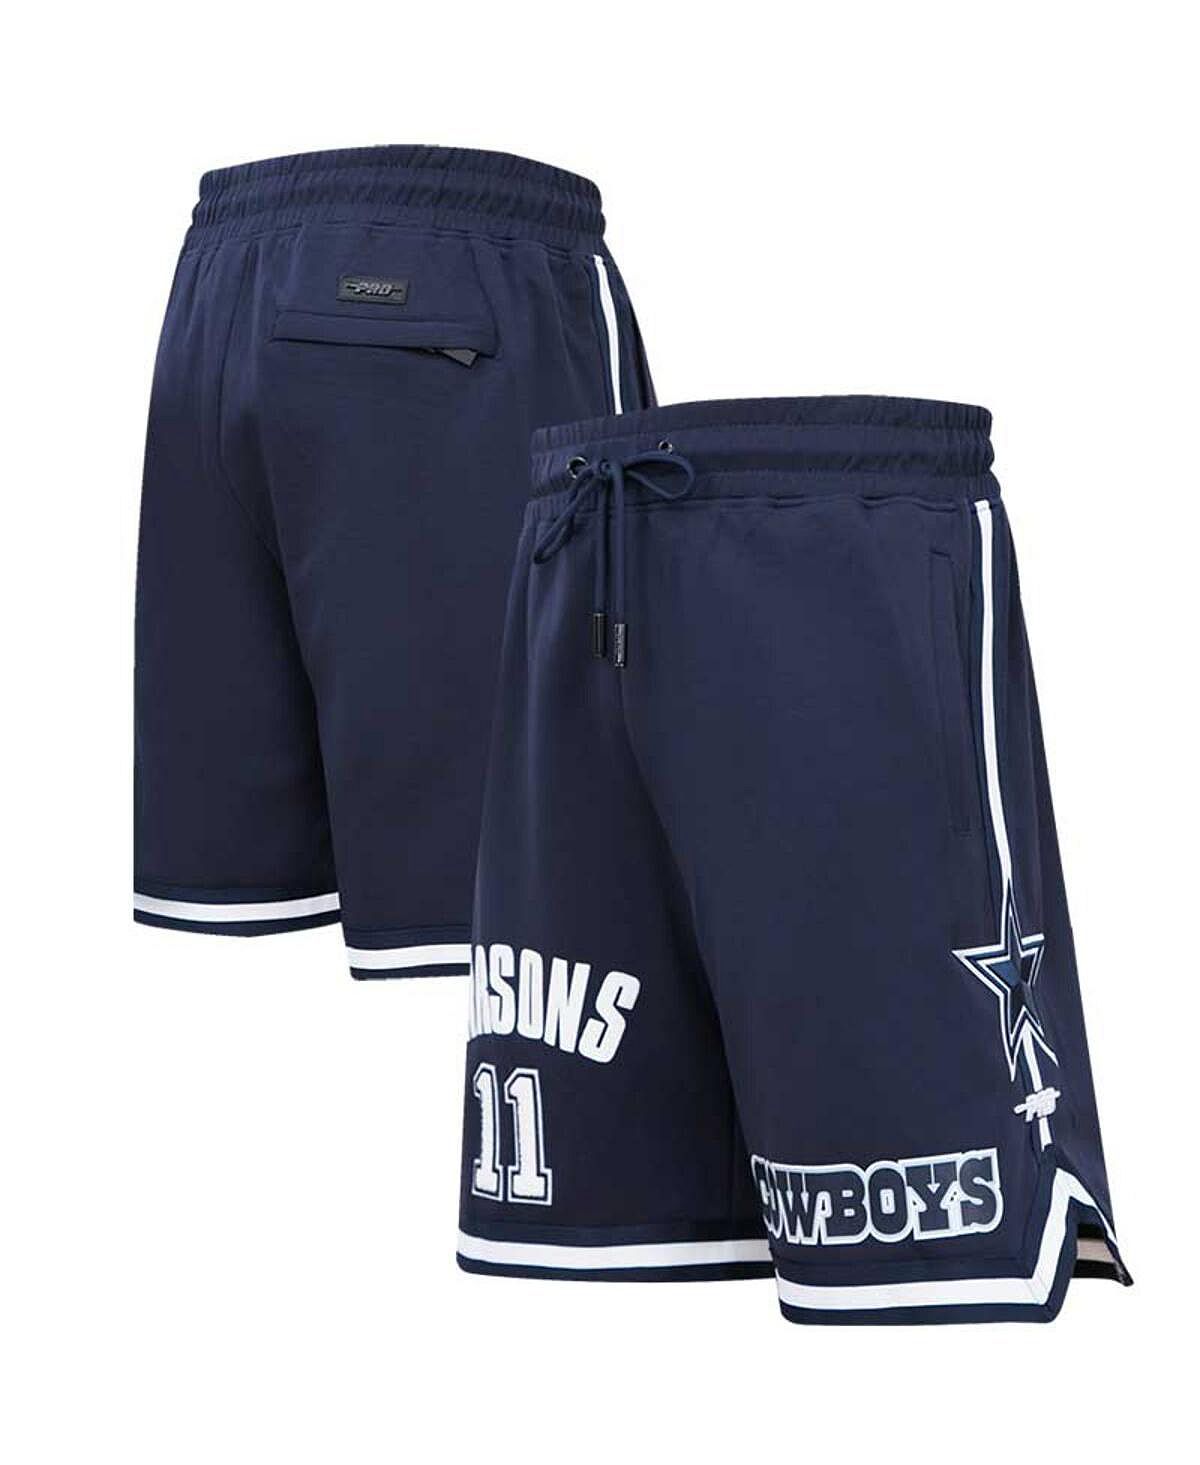 Мужские шорты темно-синего цвета с именем и номером игрока Micah Parsons Dallas Cowboys Pro Standard